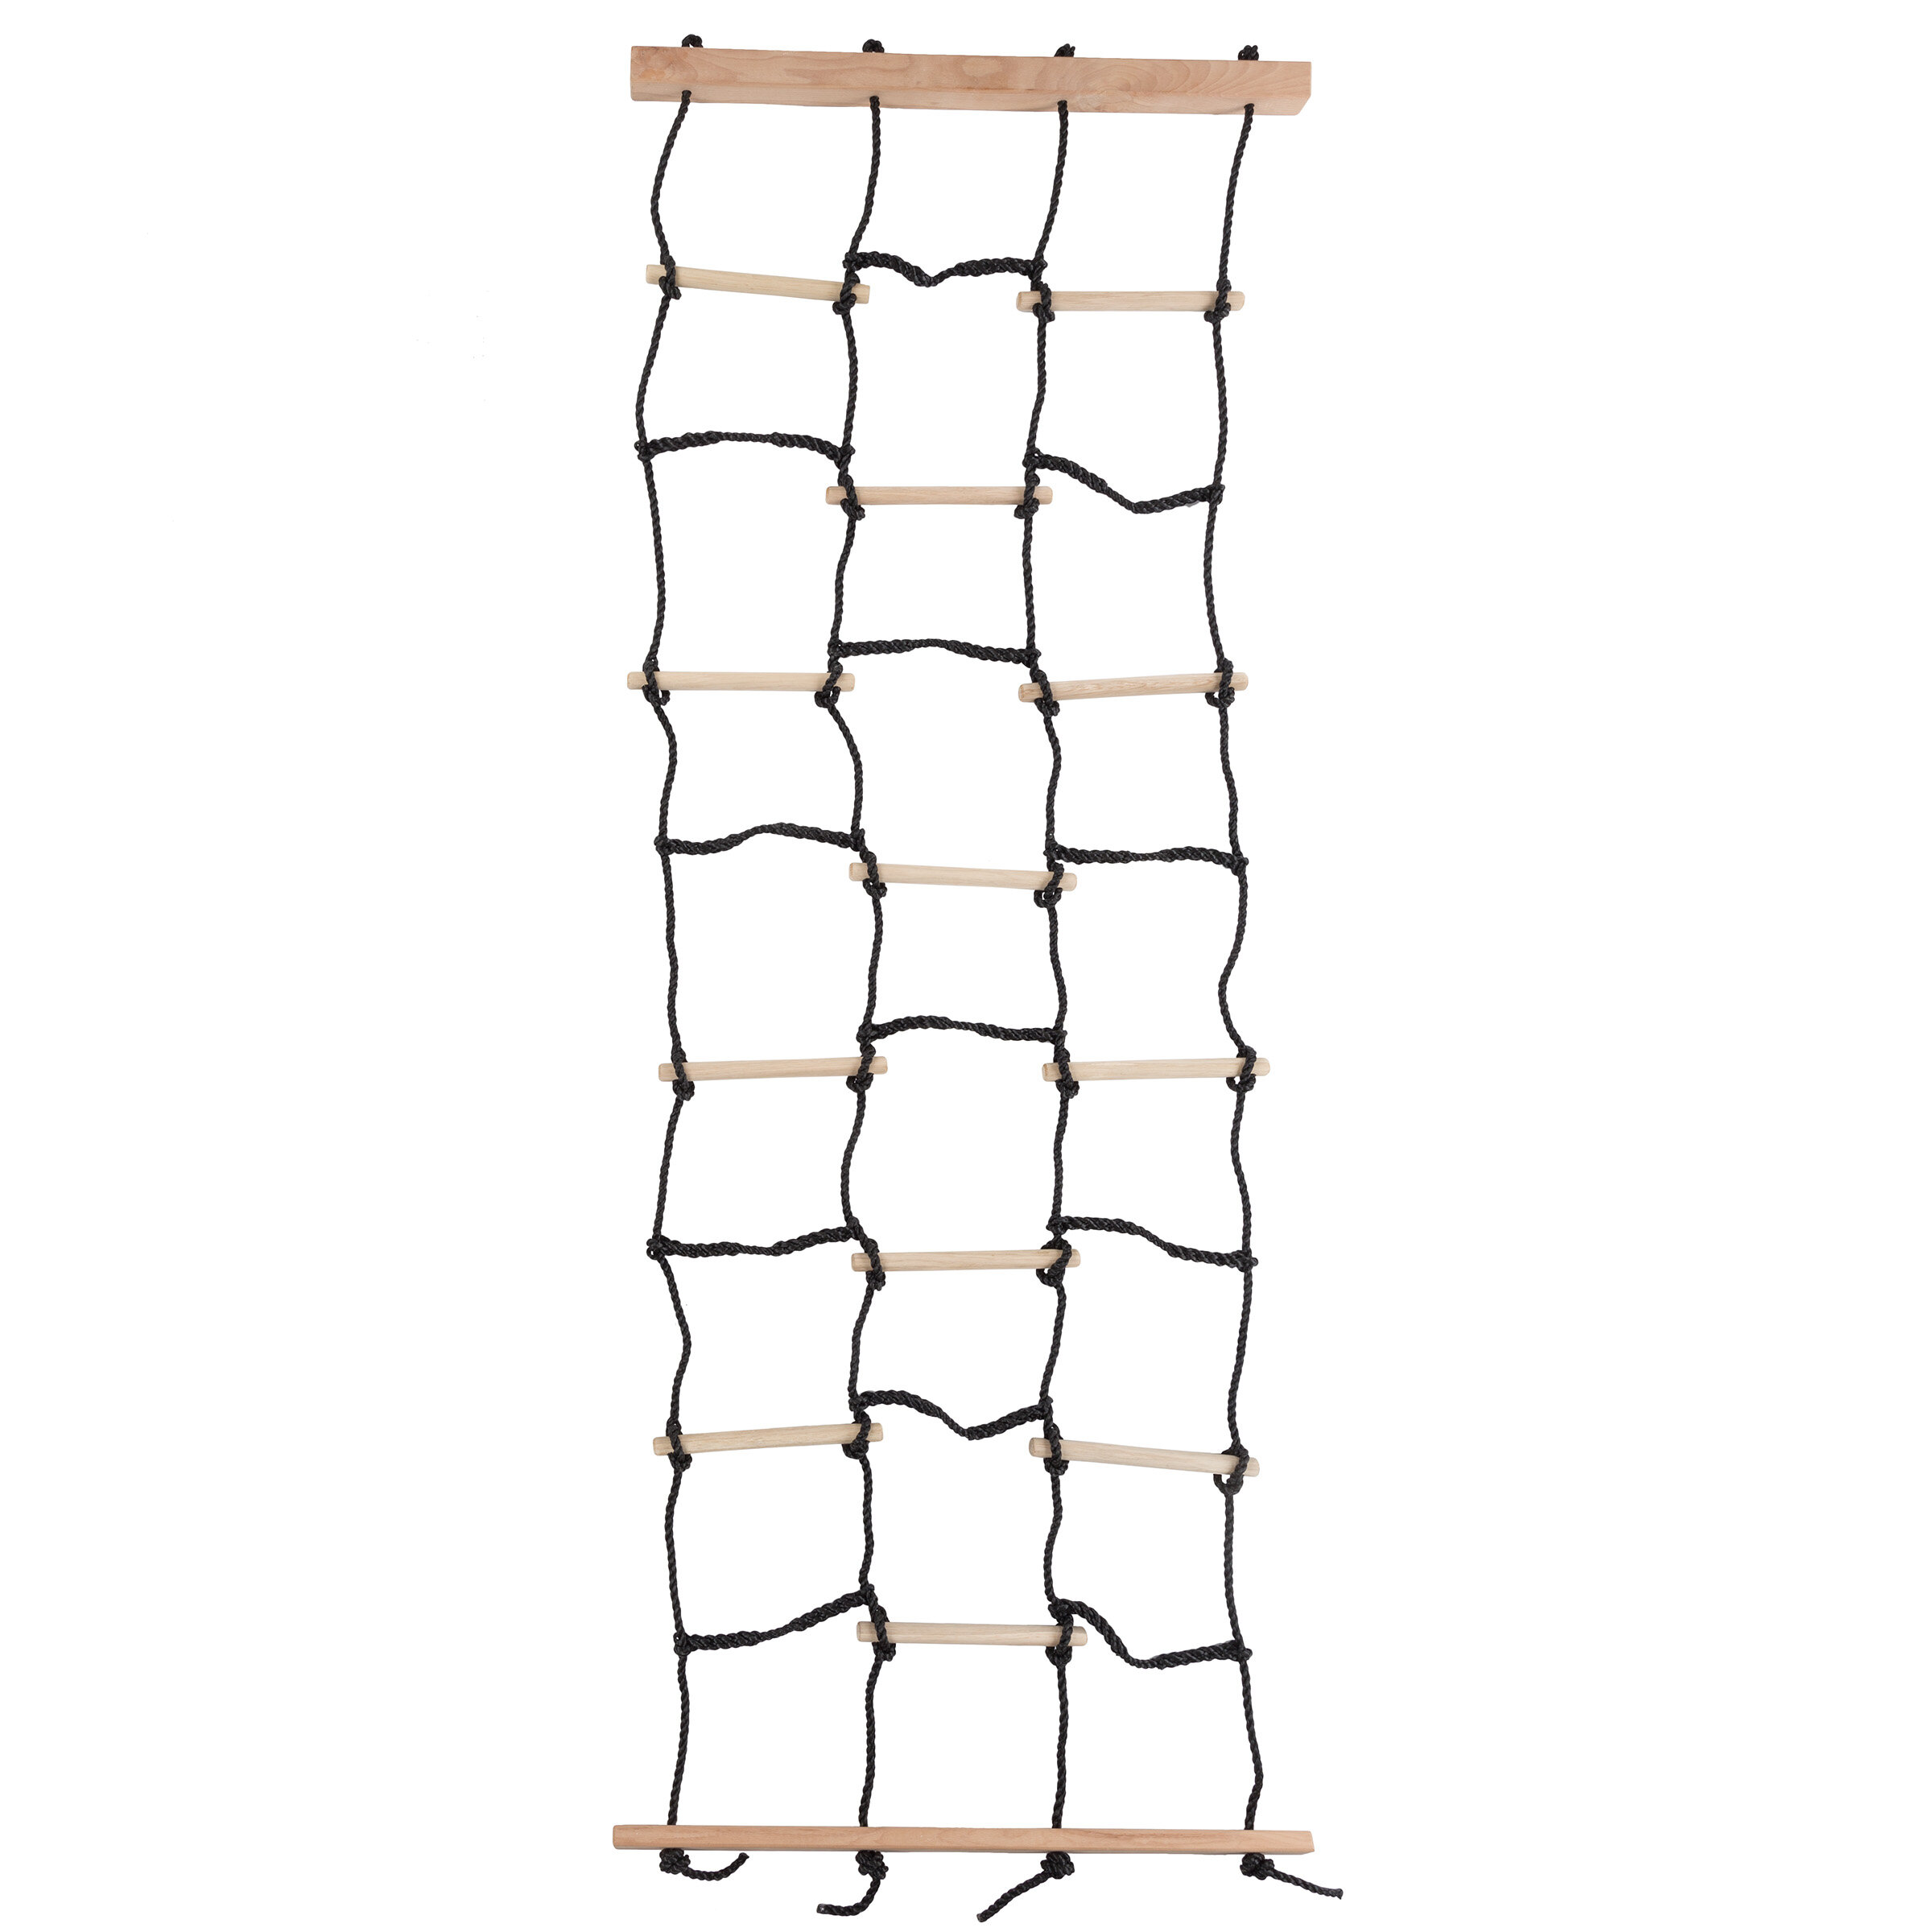 Details about   Garden Climbing Net For Kid Frame Rope Ladder Backyard Safe Training D8A5 